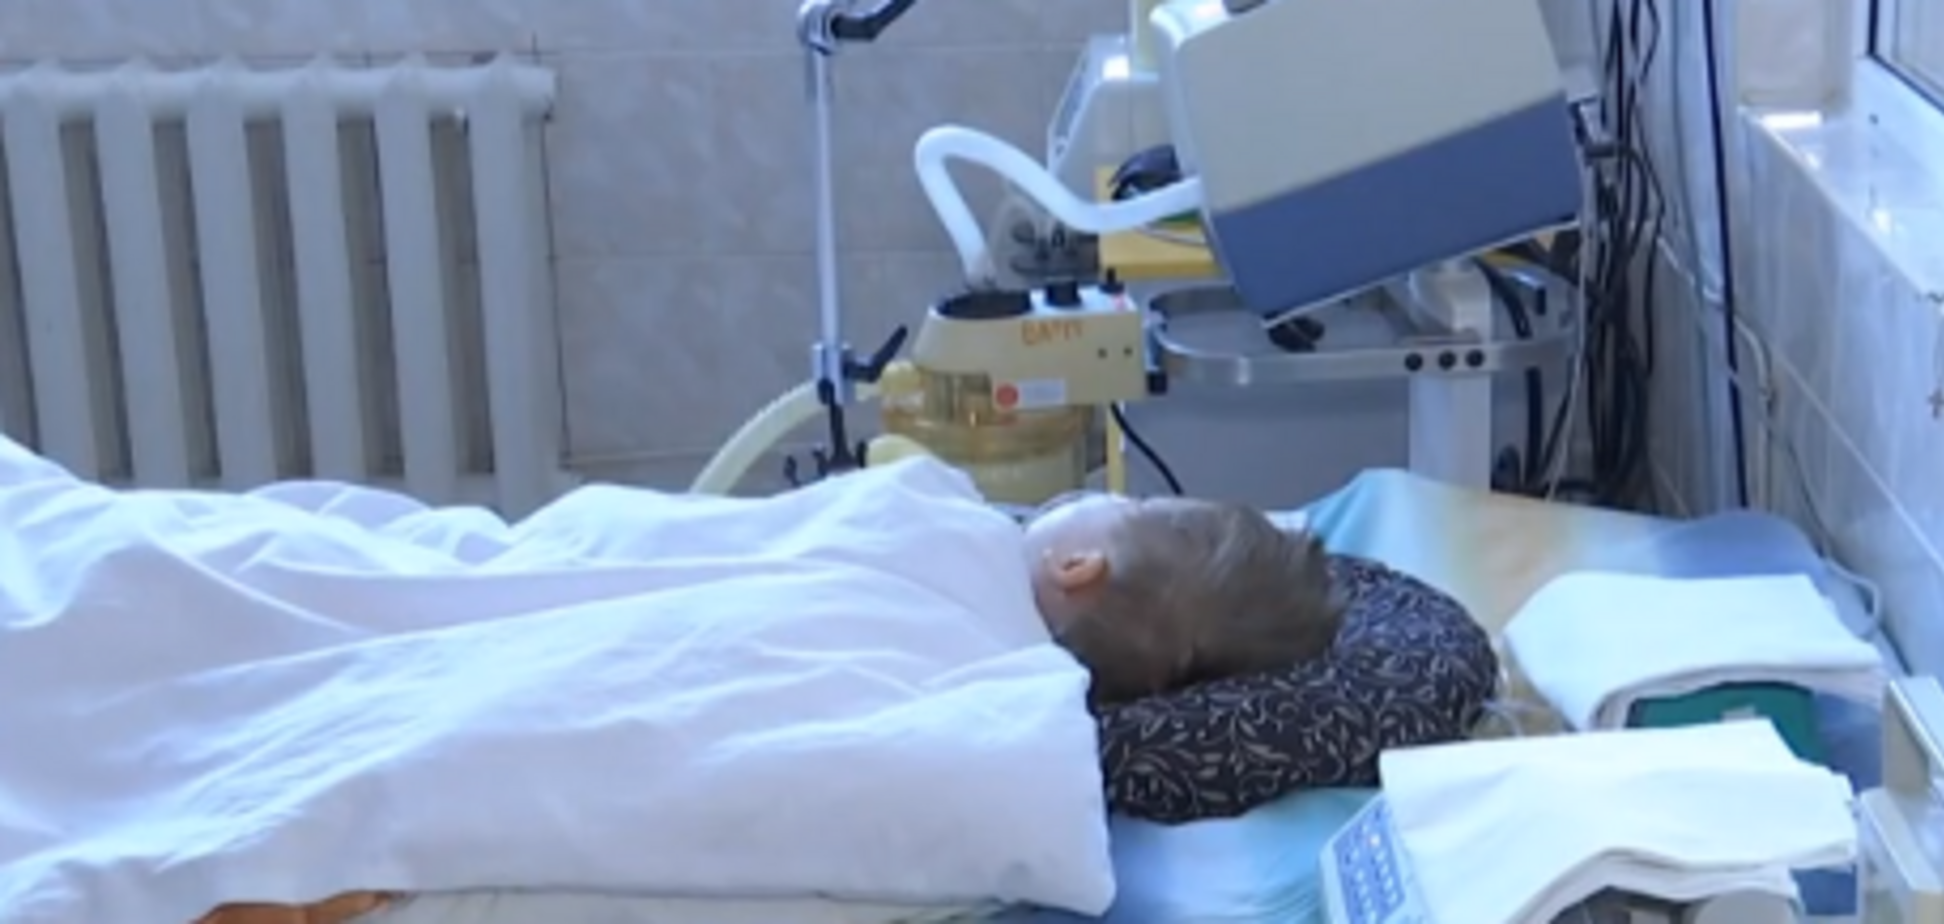 Б'ють безперервні судоми: в Україні знову зафіксована смертельна інфекція